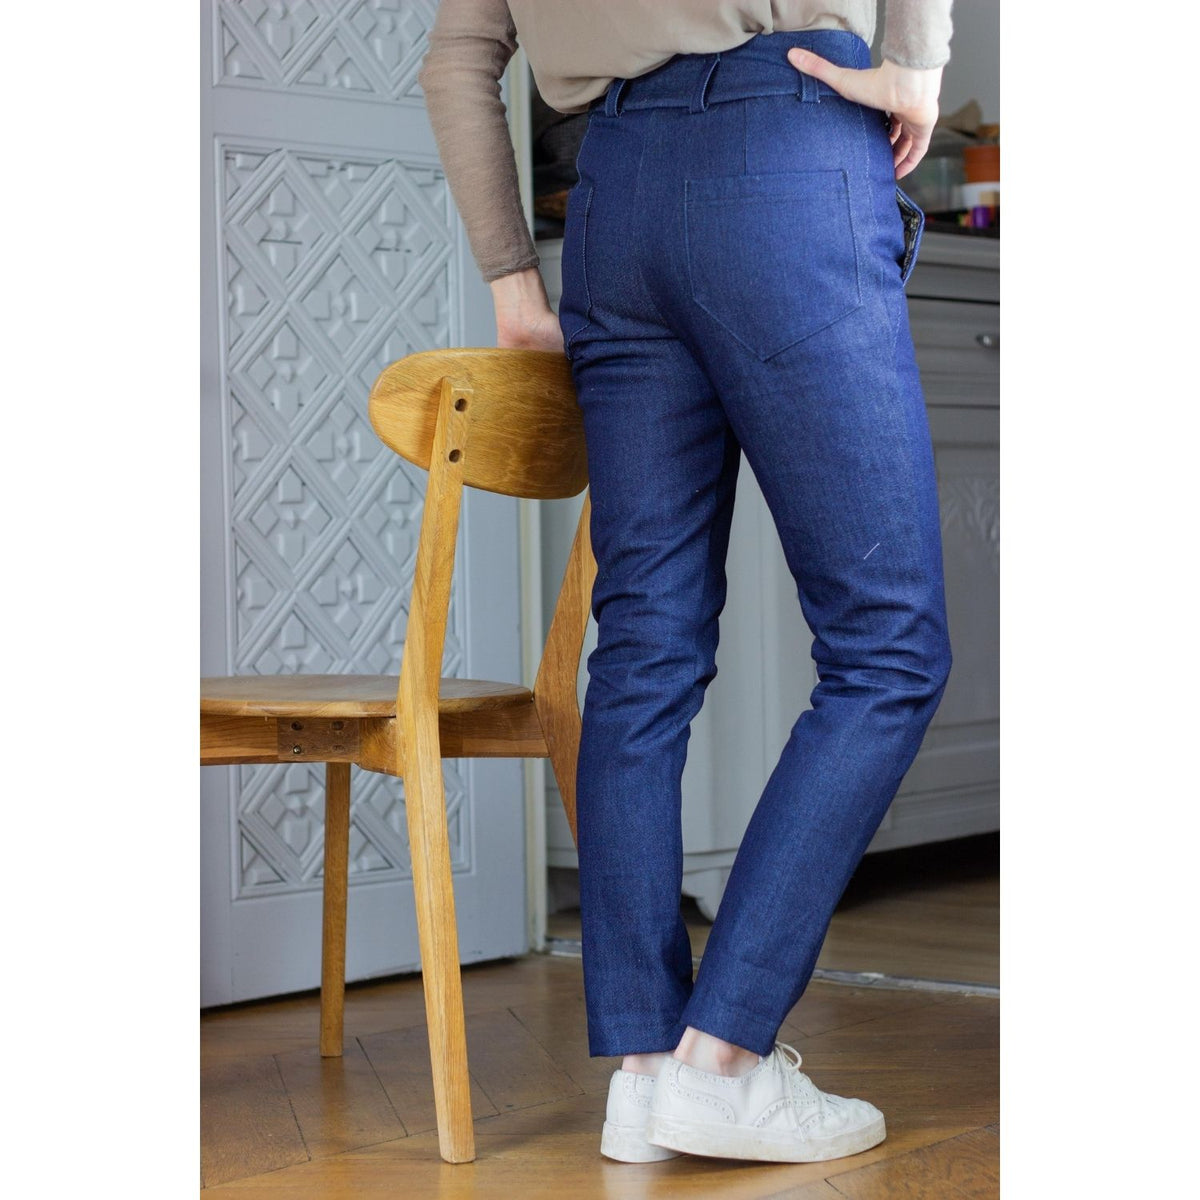 Schnittmuster Hose Réglisse als Jeans: hoher Bund, Gürtelschlaufen, vordere Taschen, Gesäßtaschen, enger Sitz